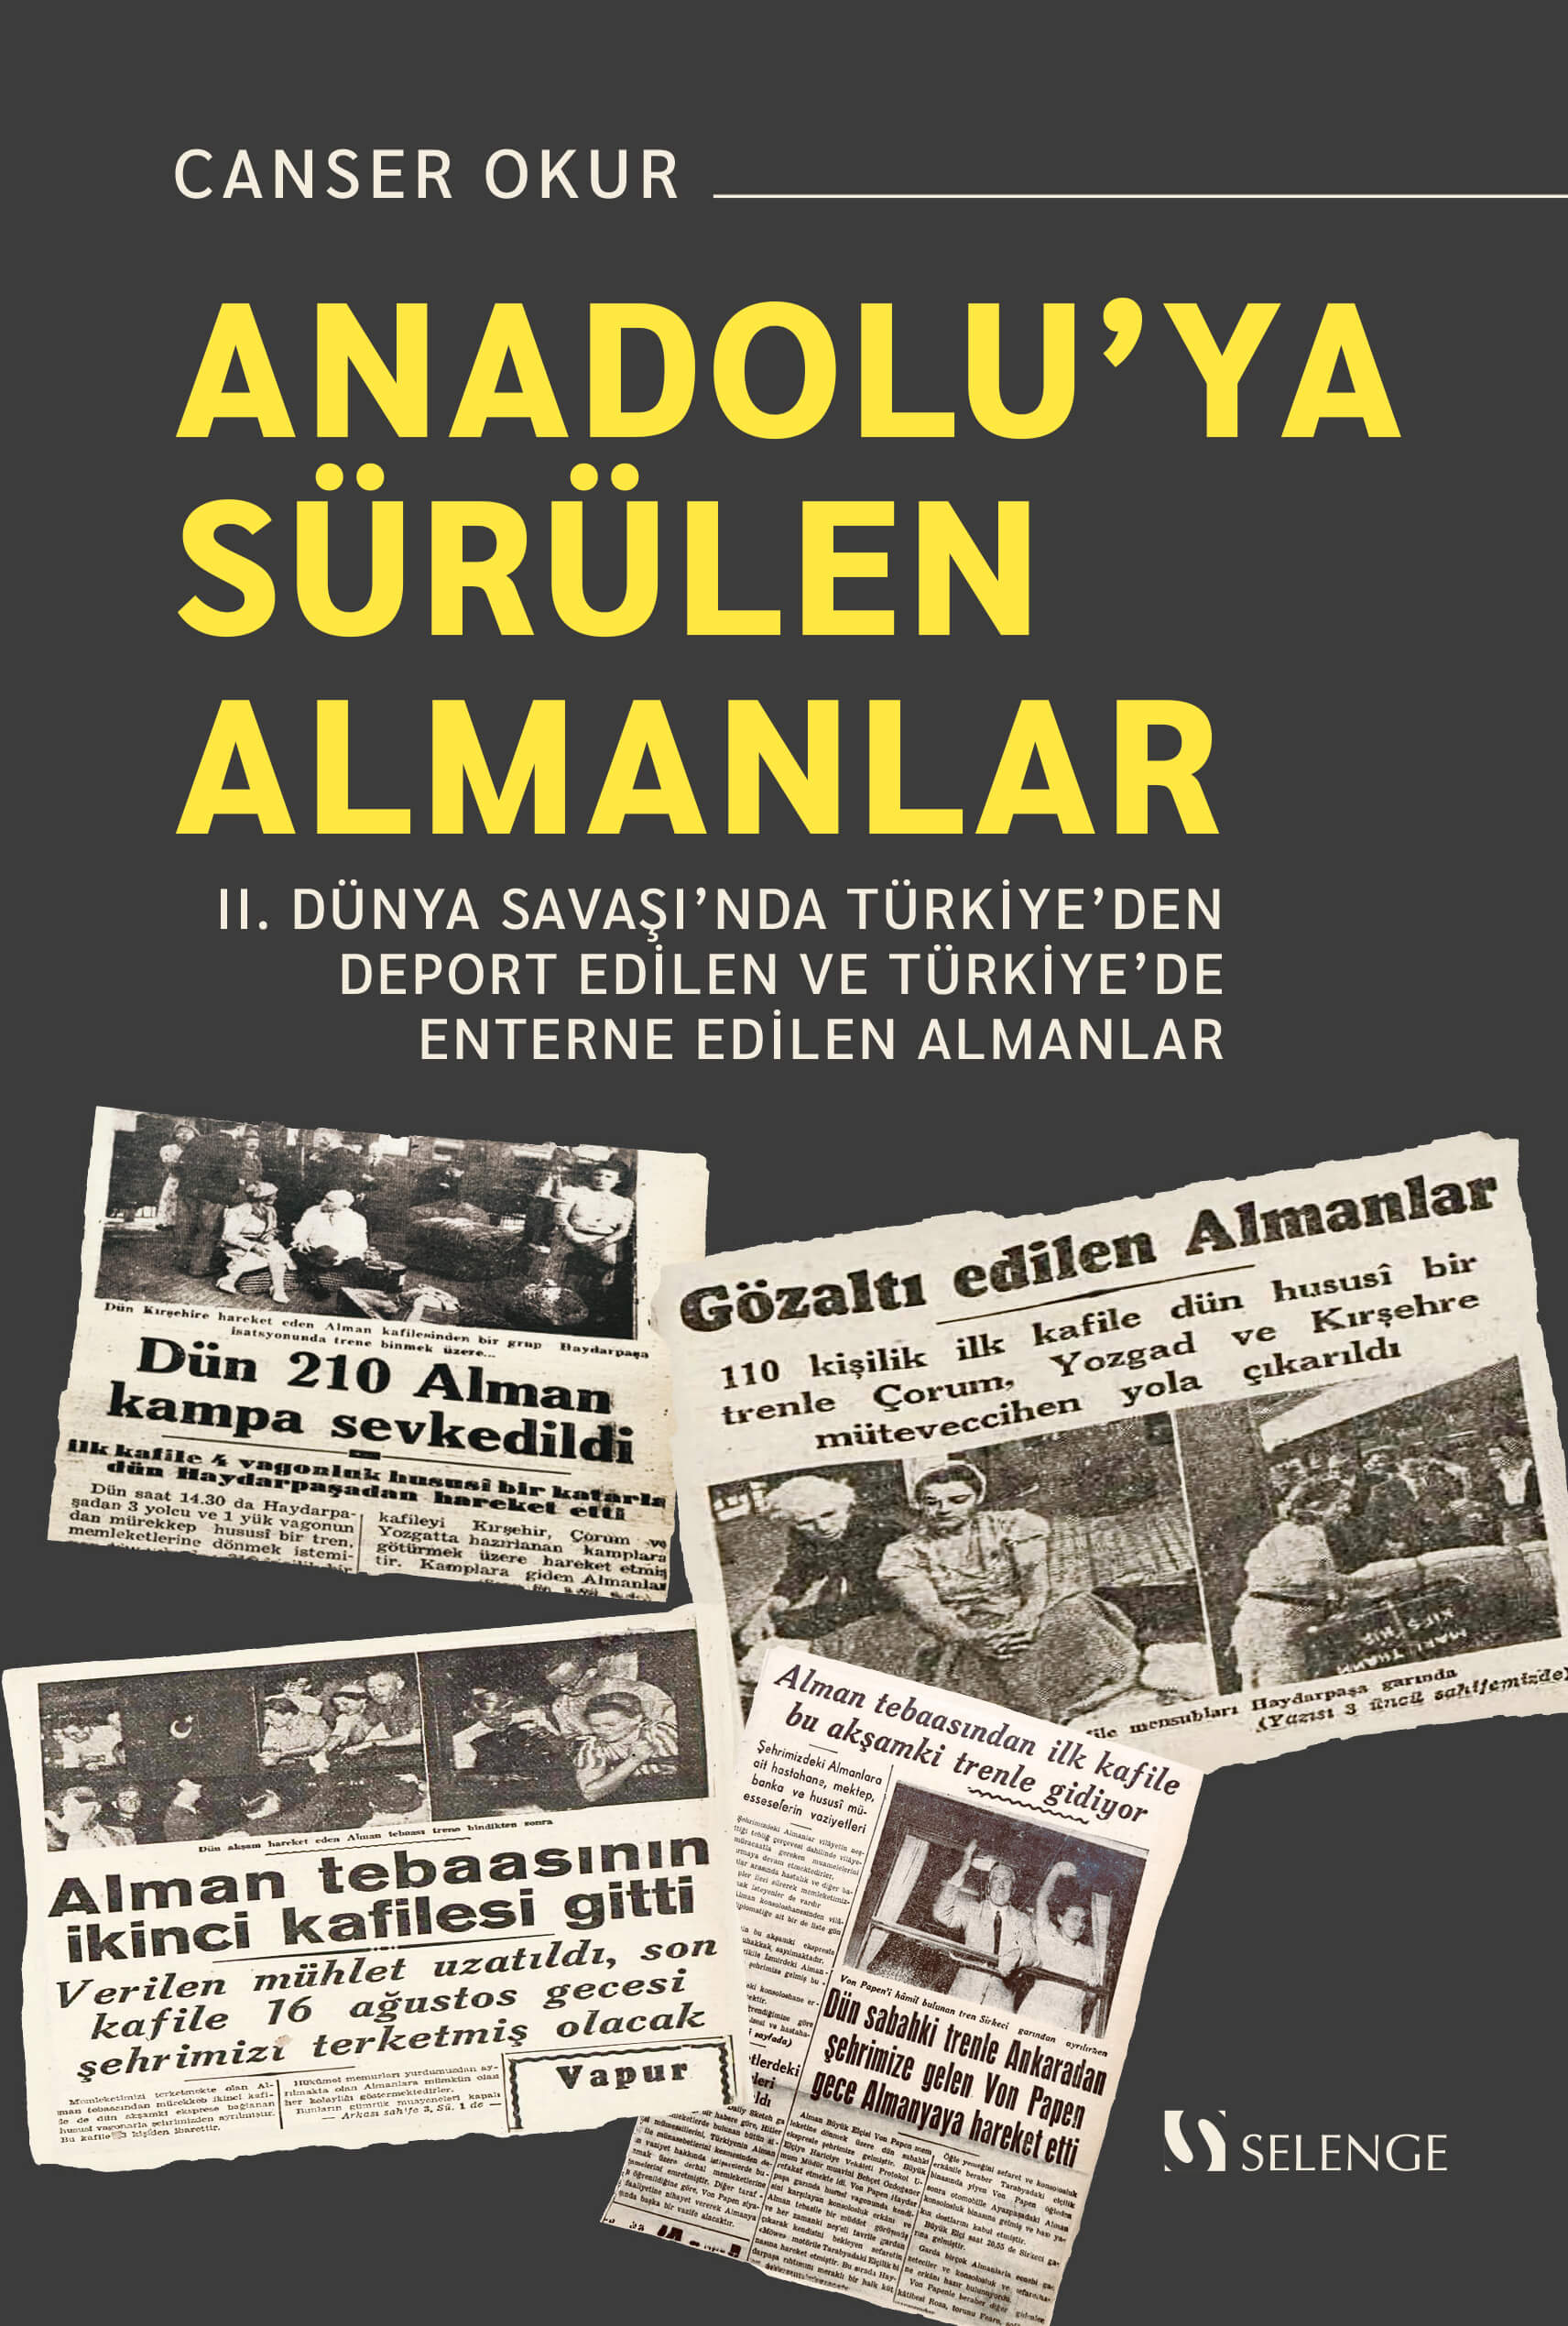 Anadolu’ya Sürülen Almanlar & II. Dünya Savaşı’nda Türkiye’den Deport Edilen ve Türkiye’de Enterne Edilen Almanlar